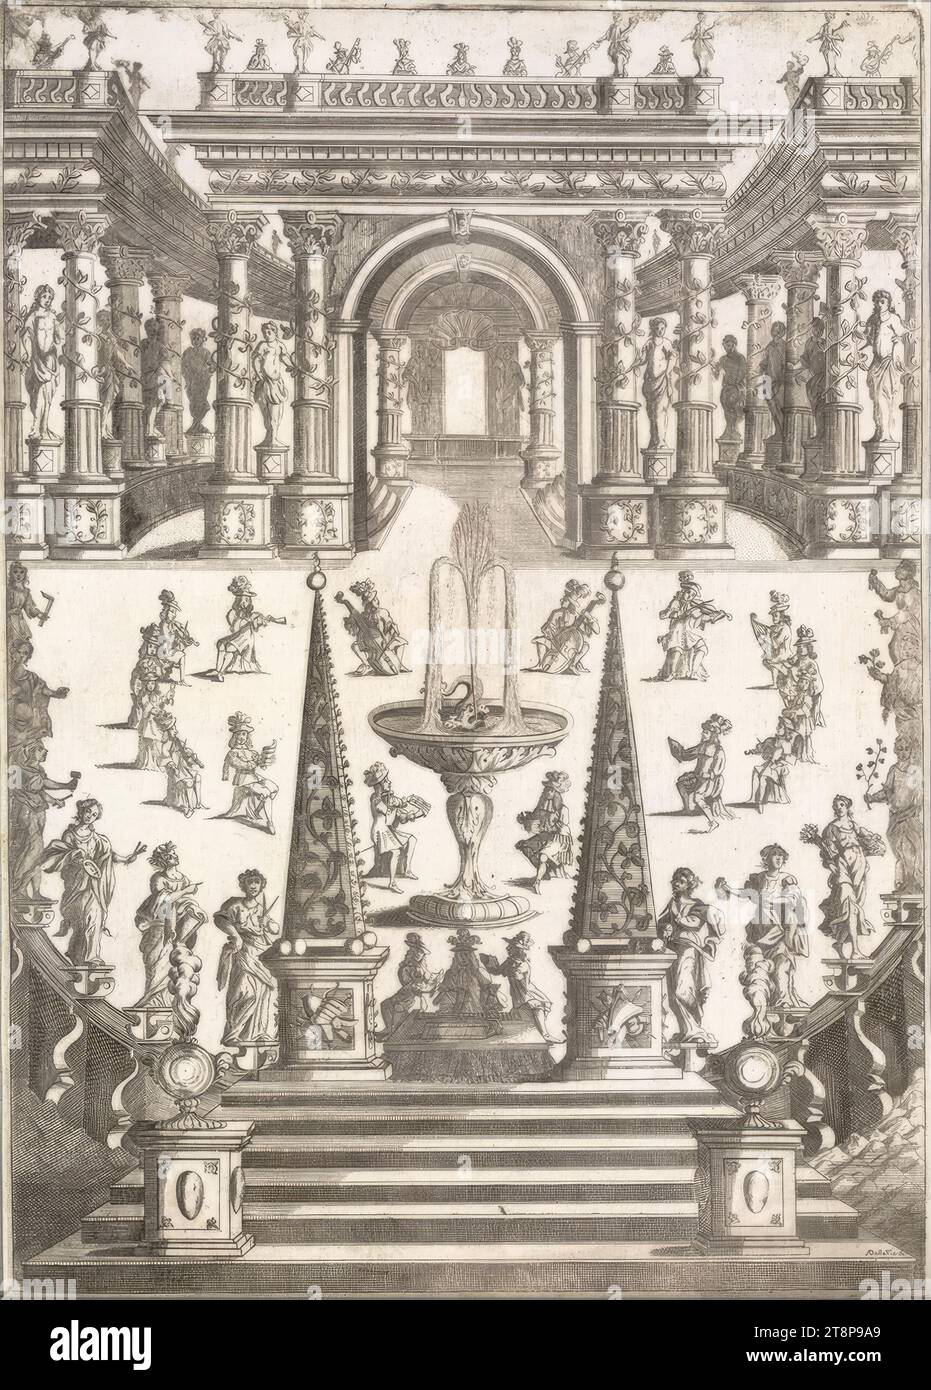 Fiera con musicisti a Venezia, Alessandro dalla via (attivo in Italia, 1688 - 1724), stampa, incisione, foglio: 46,2 x 33 cm Foto Stock